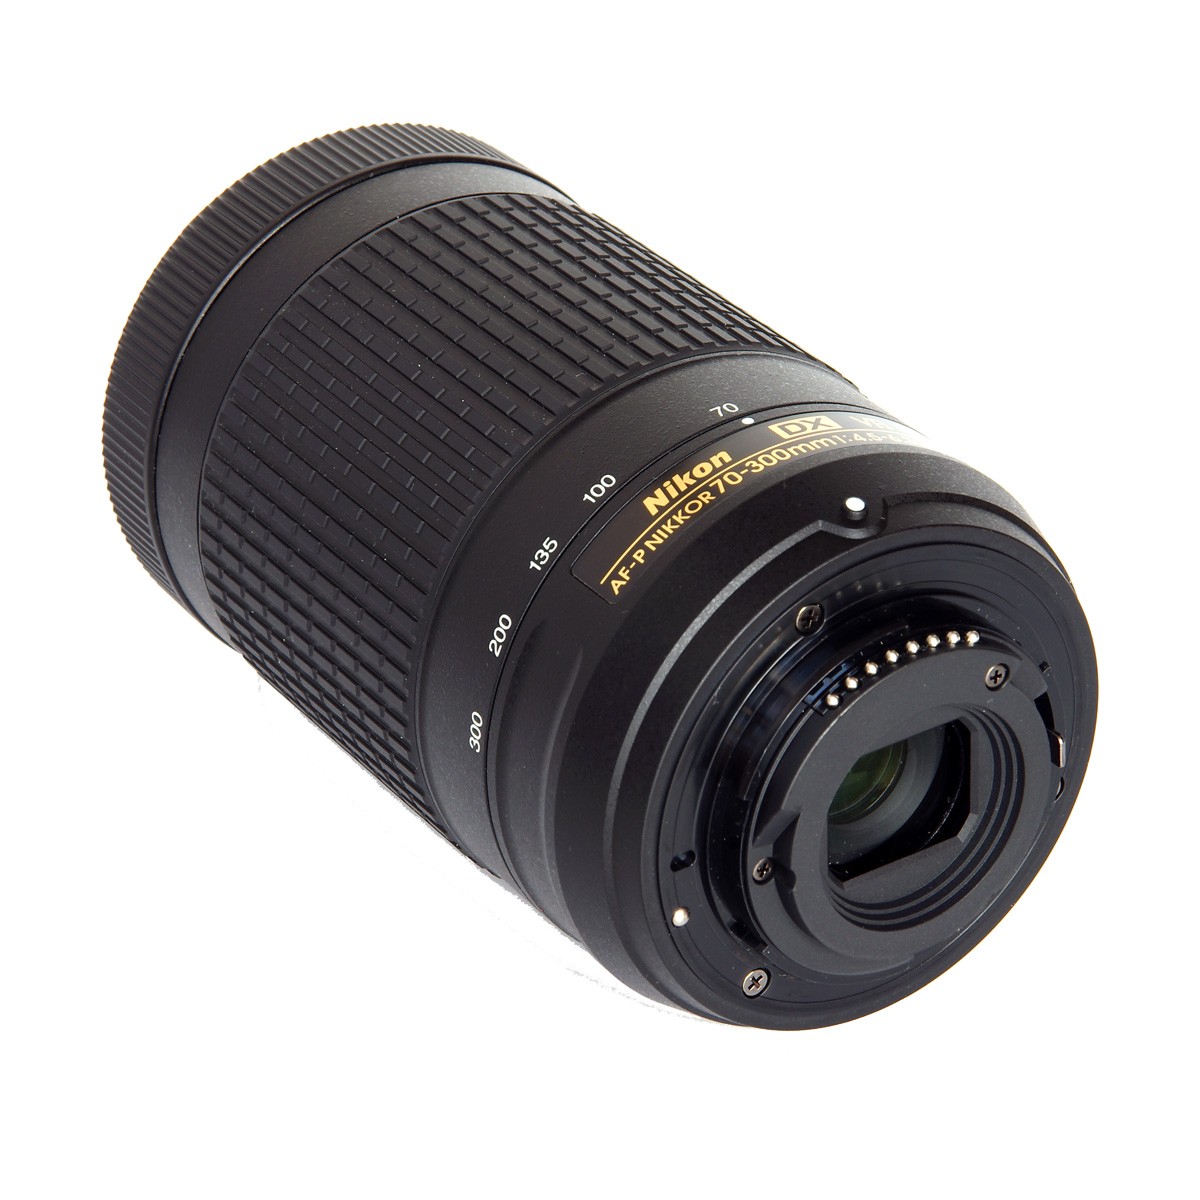 Купить Объектив Nikon 70-300mm f/4.5-6.3G ED VR AF-P DX по цене 27 000 руб.  с доставкой в Москве и всей России